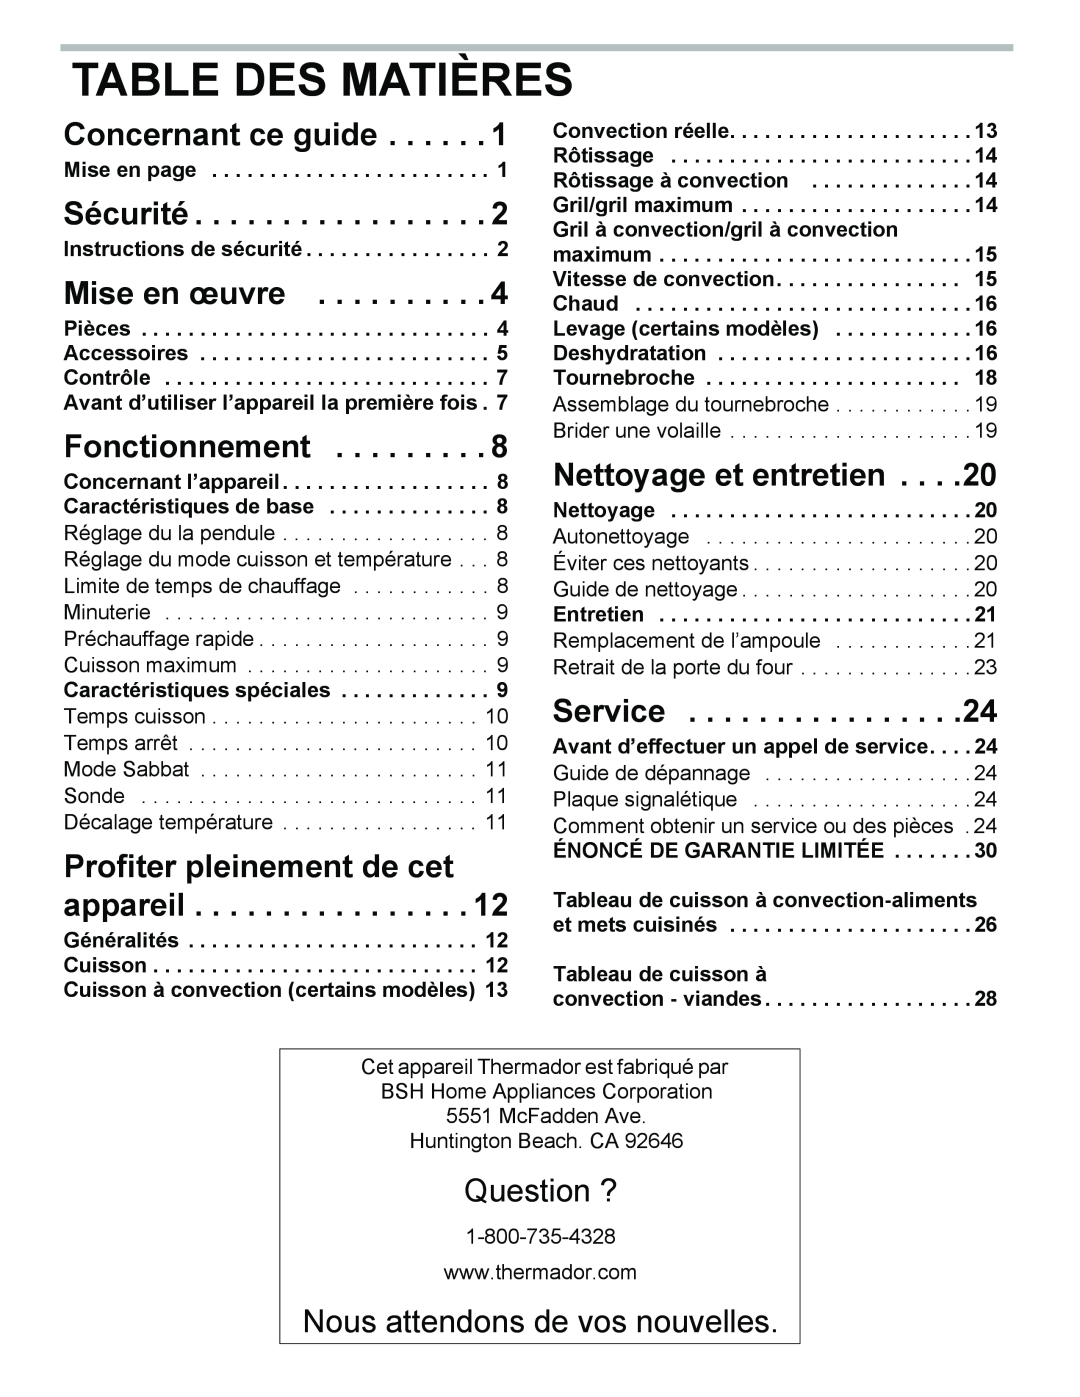 Thermador PODM301 Table Des Matières, Concernant ce guide, Sécurité, Mise en œuvre, Fonctionnement, Nettoyage et entretien 